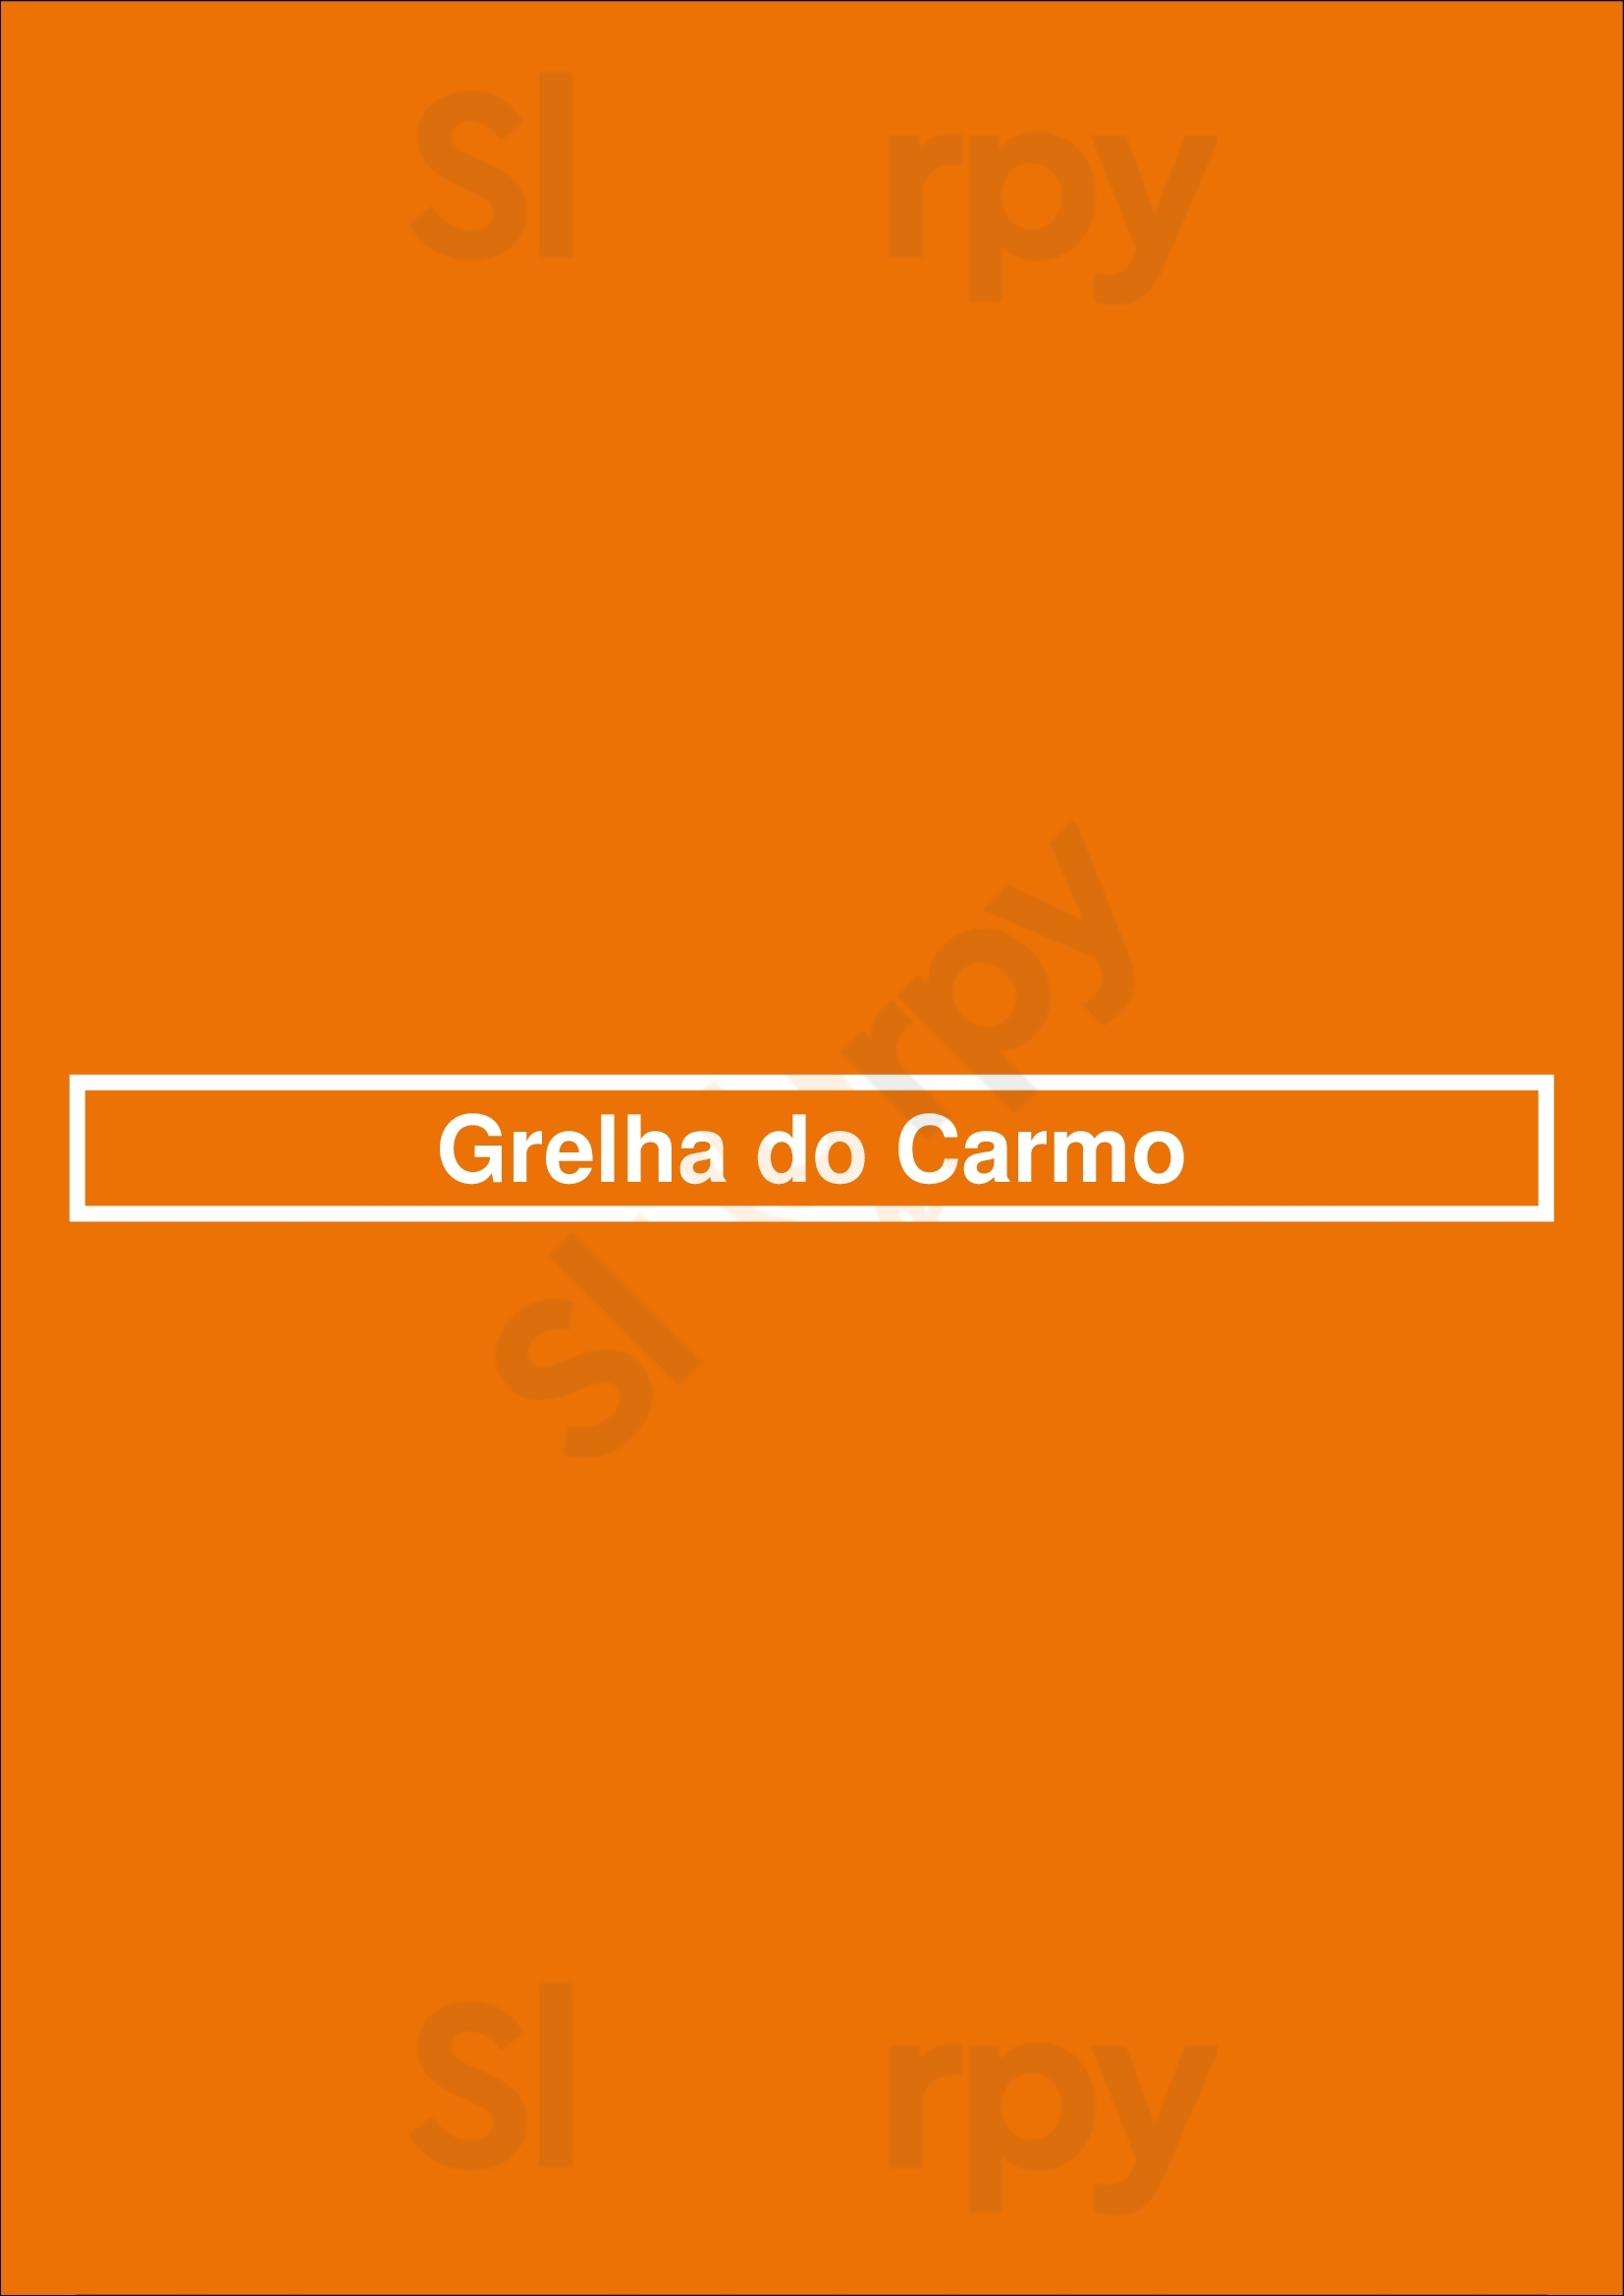 Grelha Do Carmo Lisboa Menu - 1